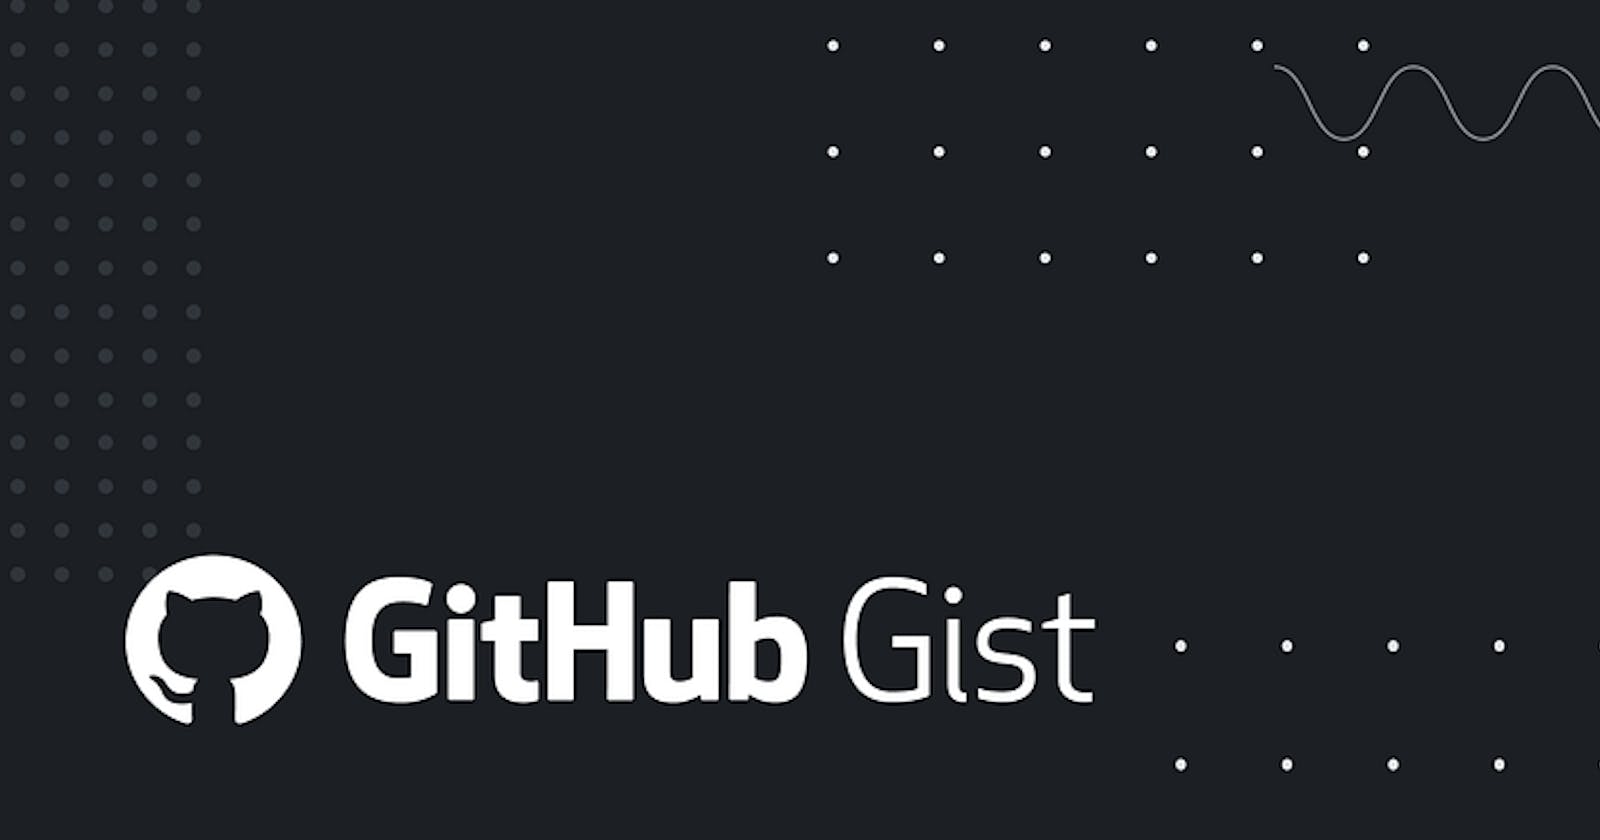 Getting into GitHub Gist